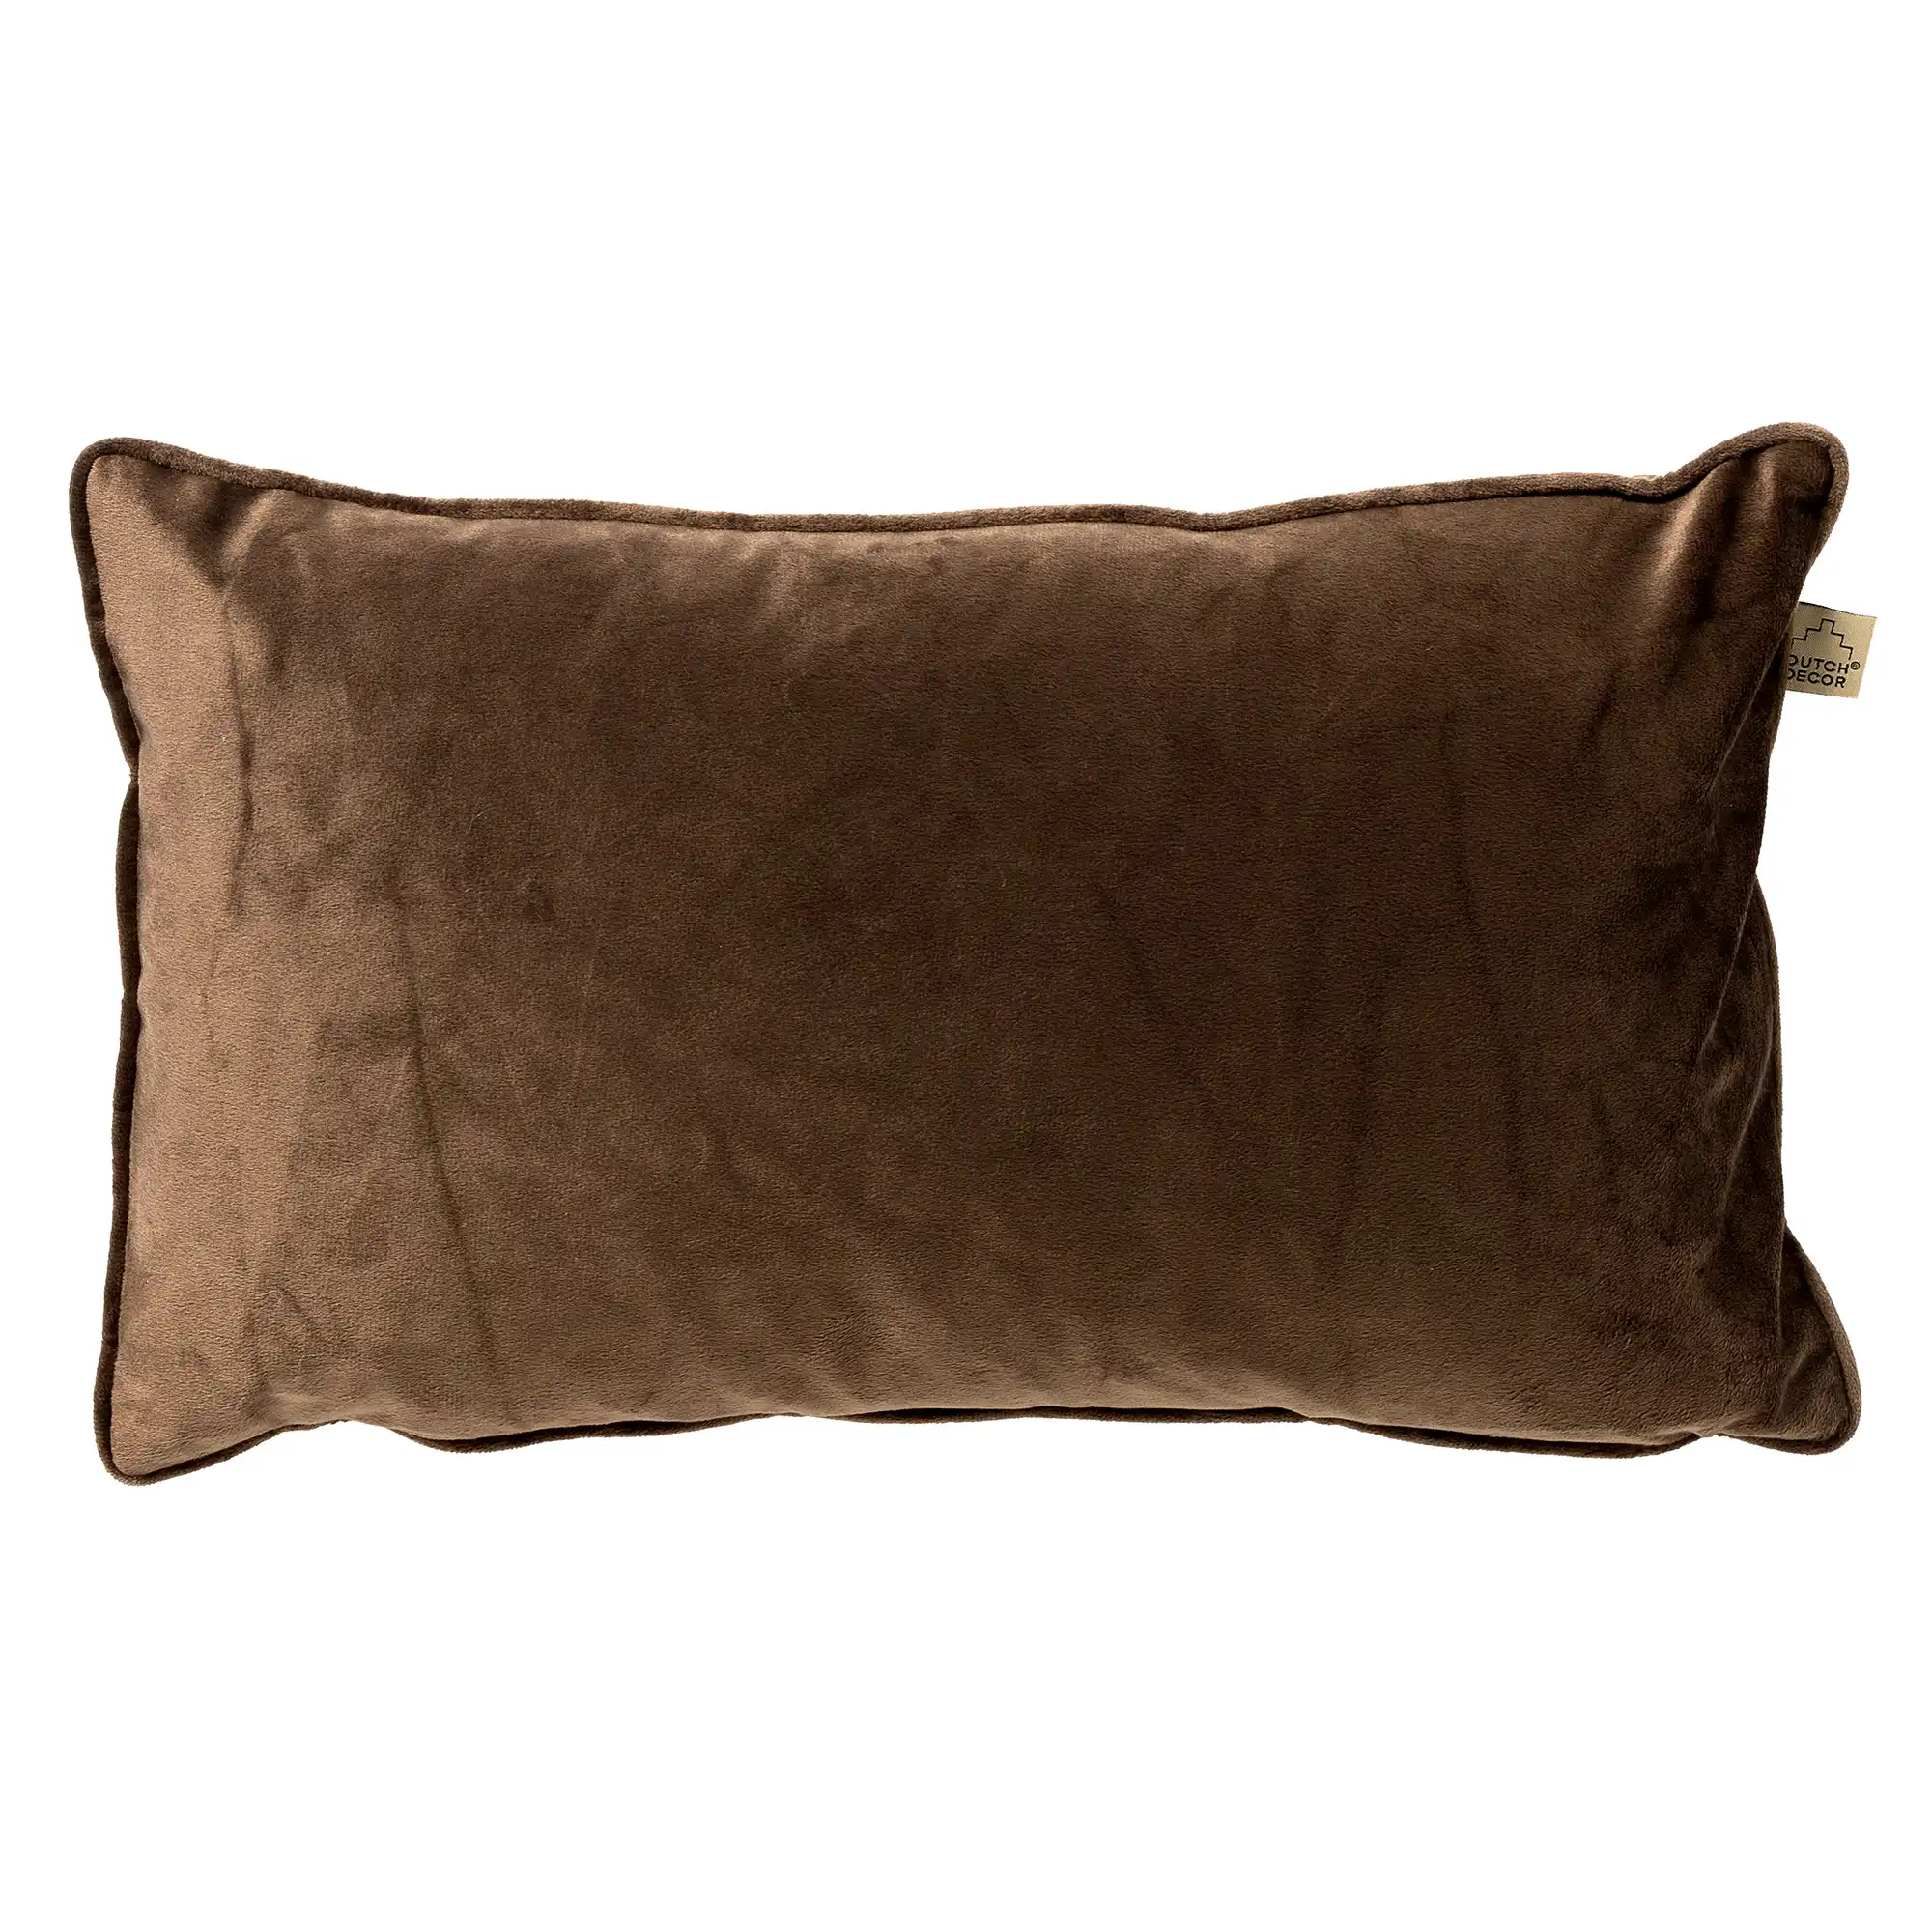 FINN - Cushion 30x50 cm - Chocolate Martini - brown